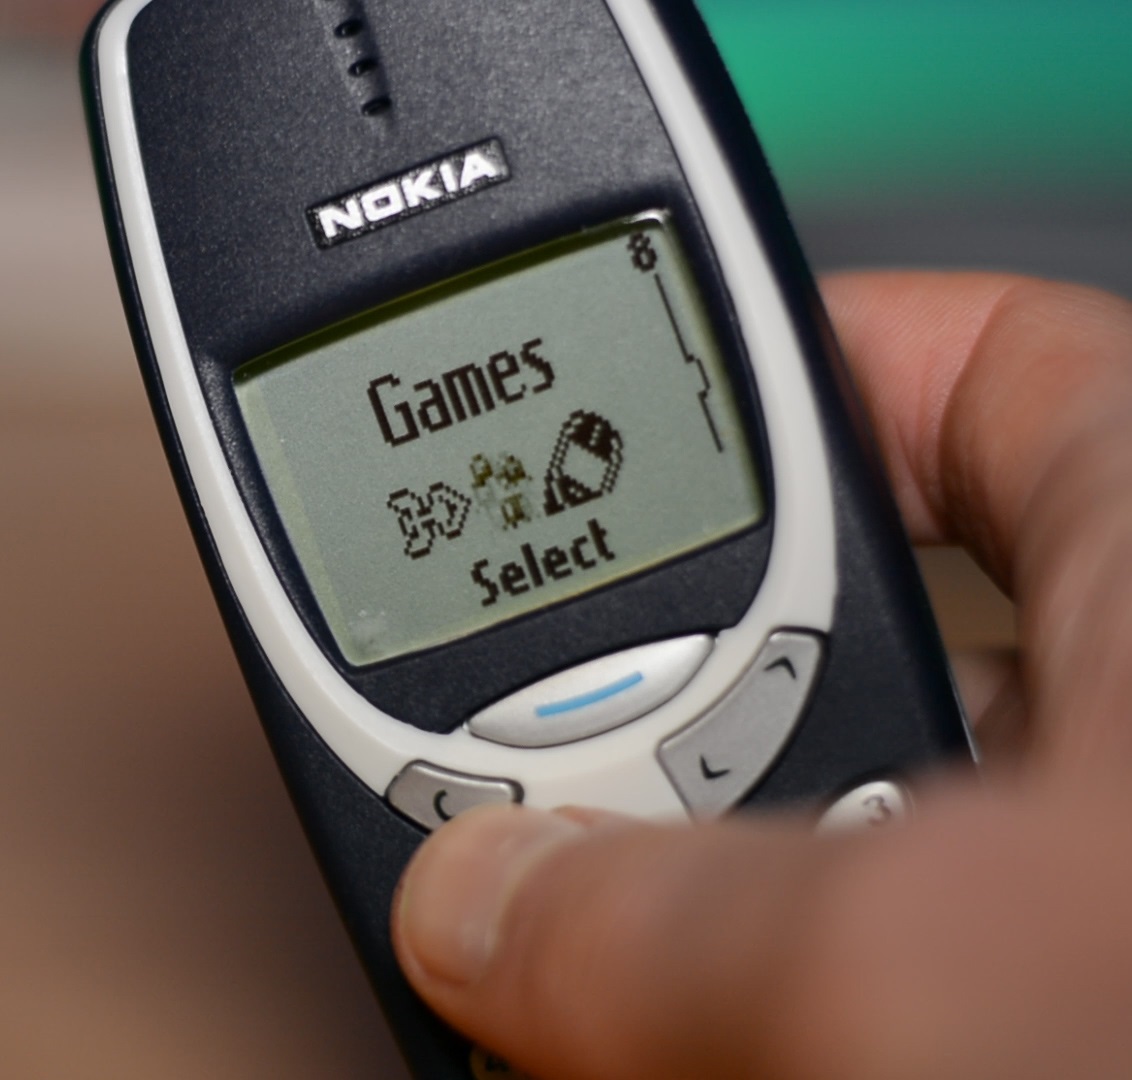 За много хора Nokia 3310 си остава най-добрият телефон излизал някога